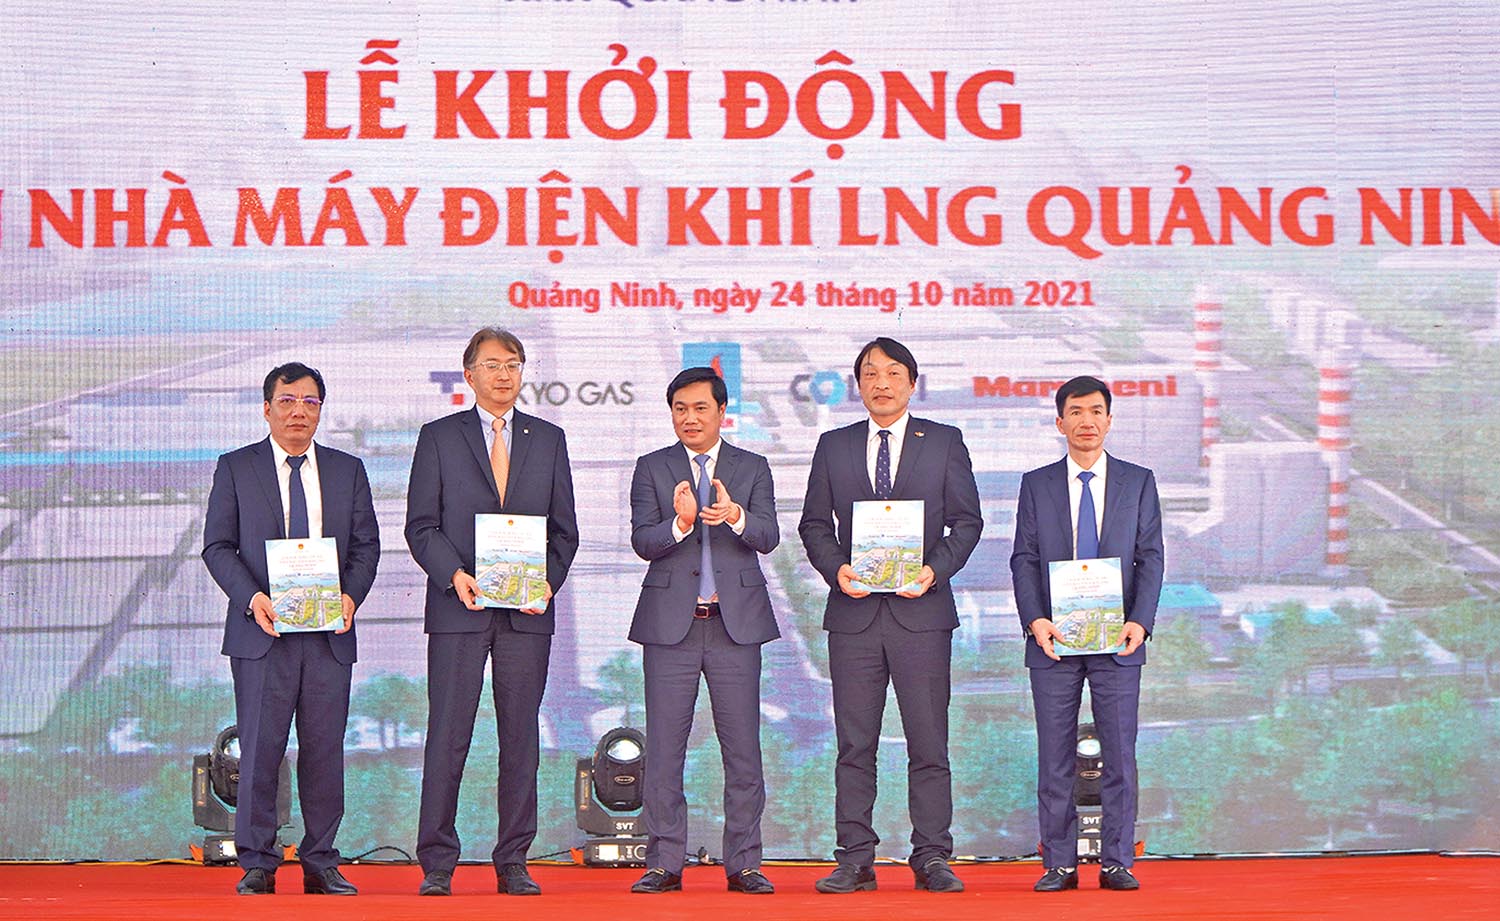 Ông Nguyễn Tường Văn, Chủ tịch UBND tỉnh Quảng Ninh (đứng giữa) trao Giấy chứng nhận đầu tư Dự án Nhà máy Điện khí LNG Quảng Ninh cho các nhà đầu tư